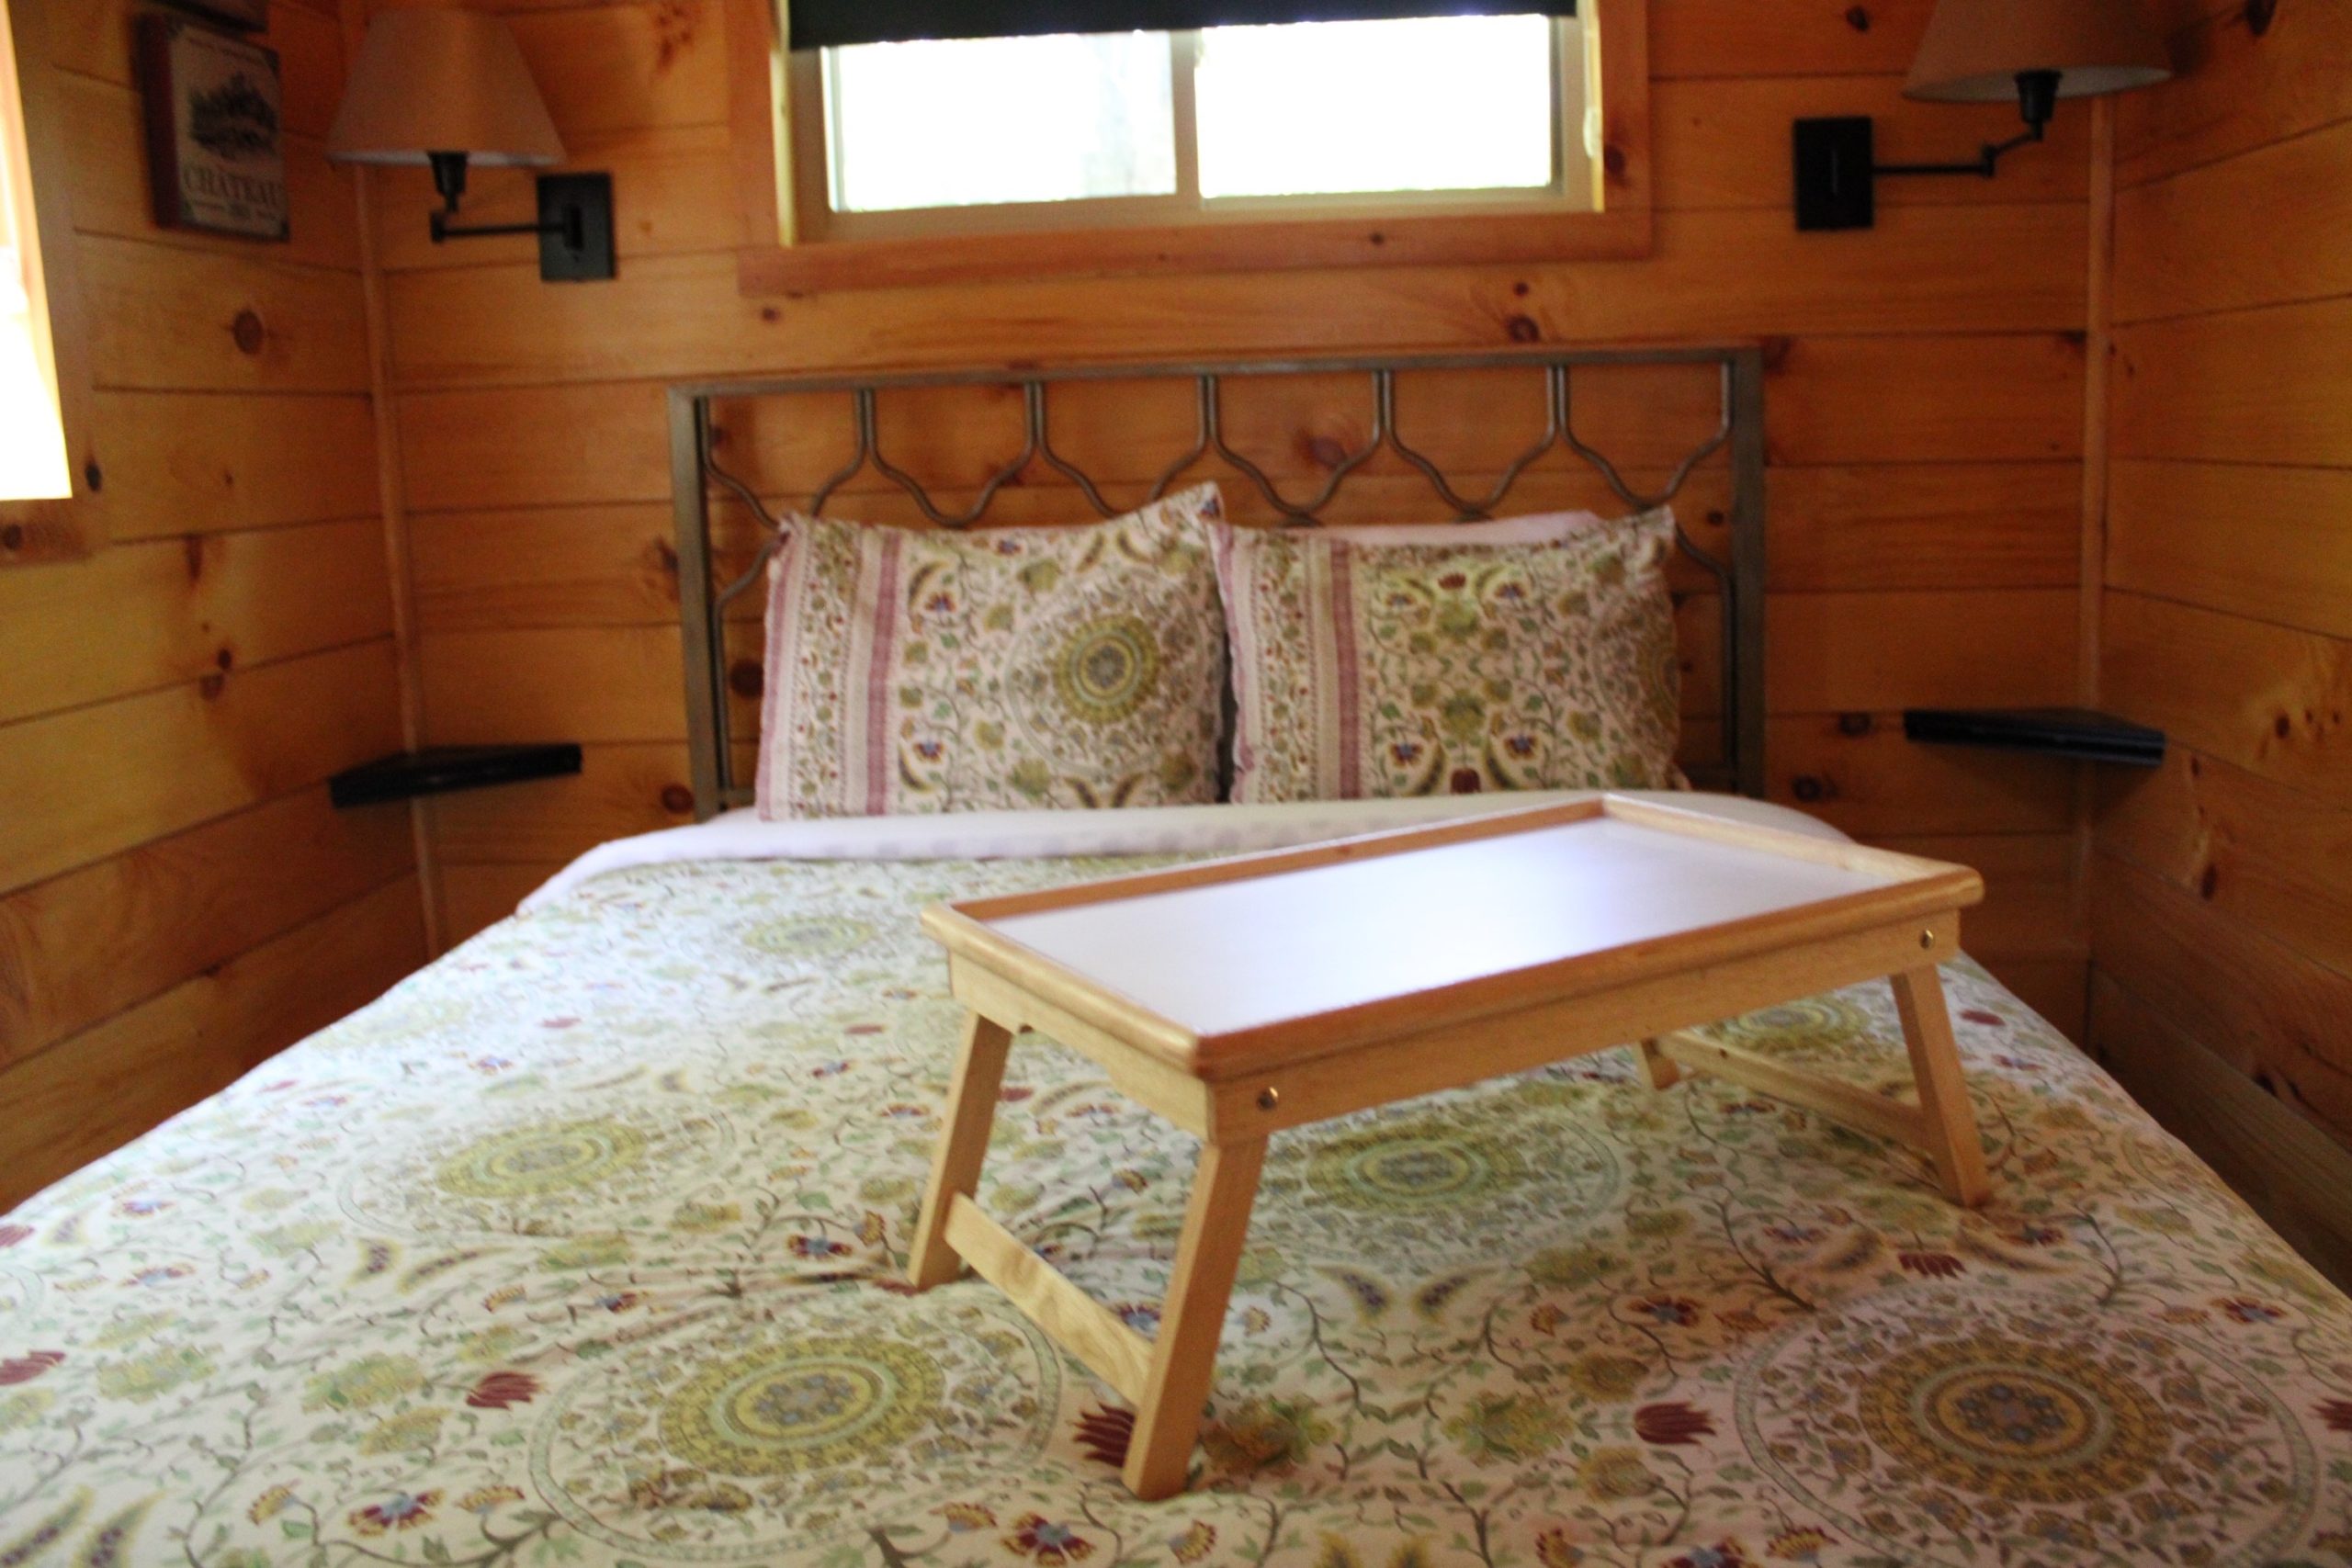 Tuscany Tree House Cabin Bedroom 1